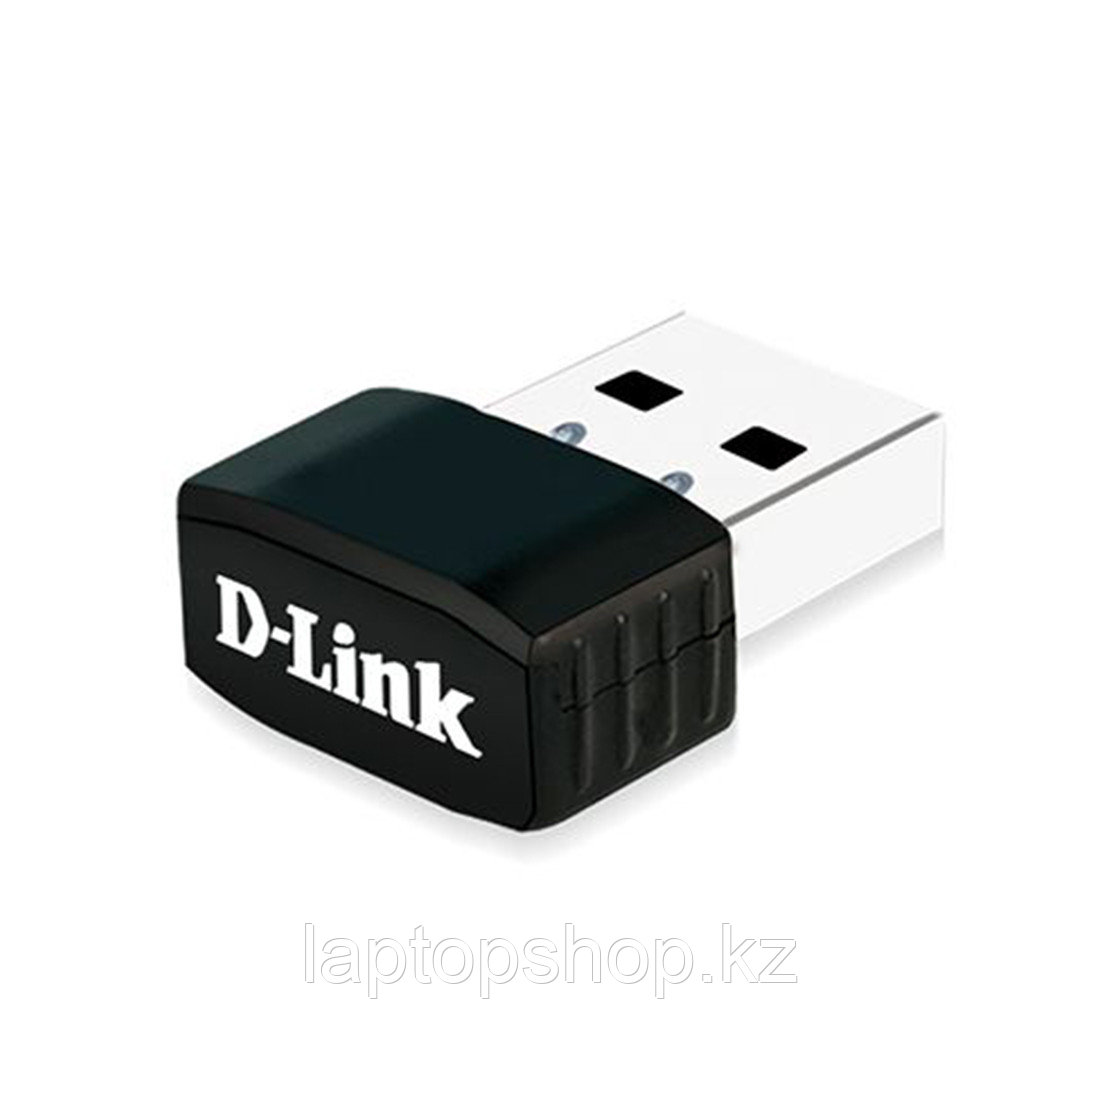 Wifi адаптер D-Link DWA-131/F1A, USB адаптер